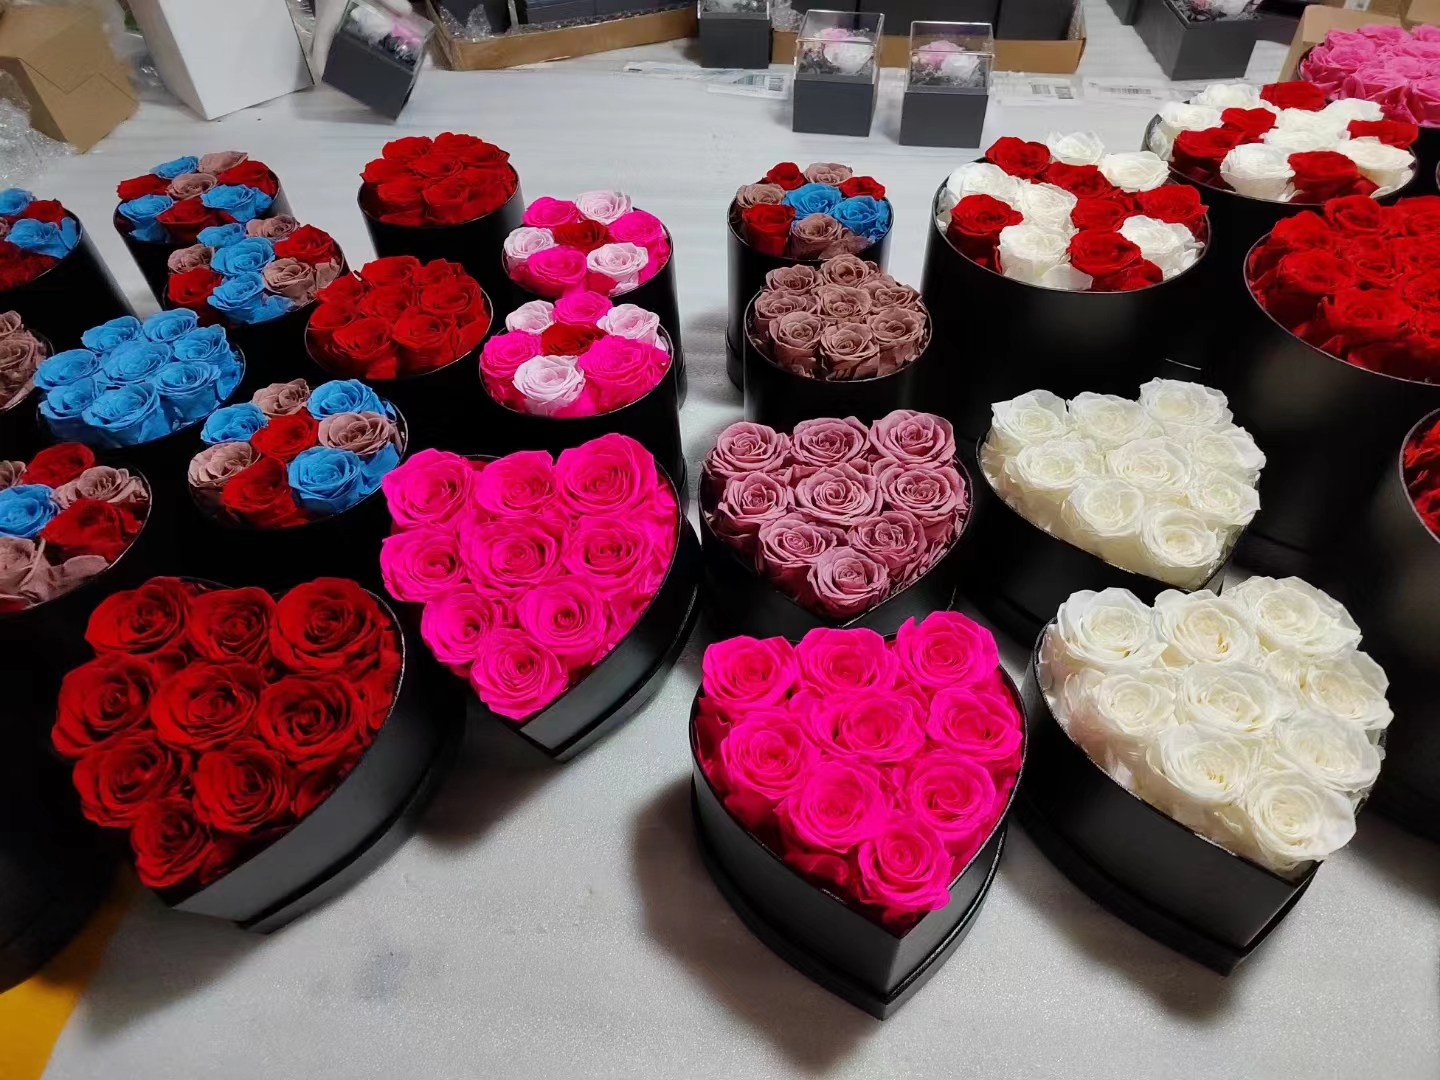 Вечеринка поставки вечная роза в коробке сохранившихся цветов Rast Rose с подарками на День Святого Валентина. Лучший подарок на День Матери